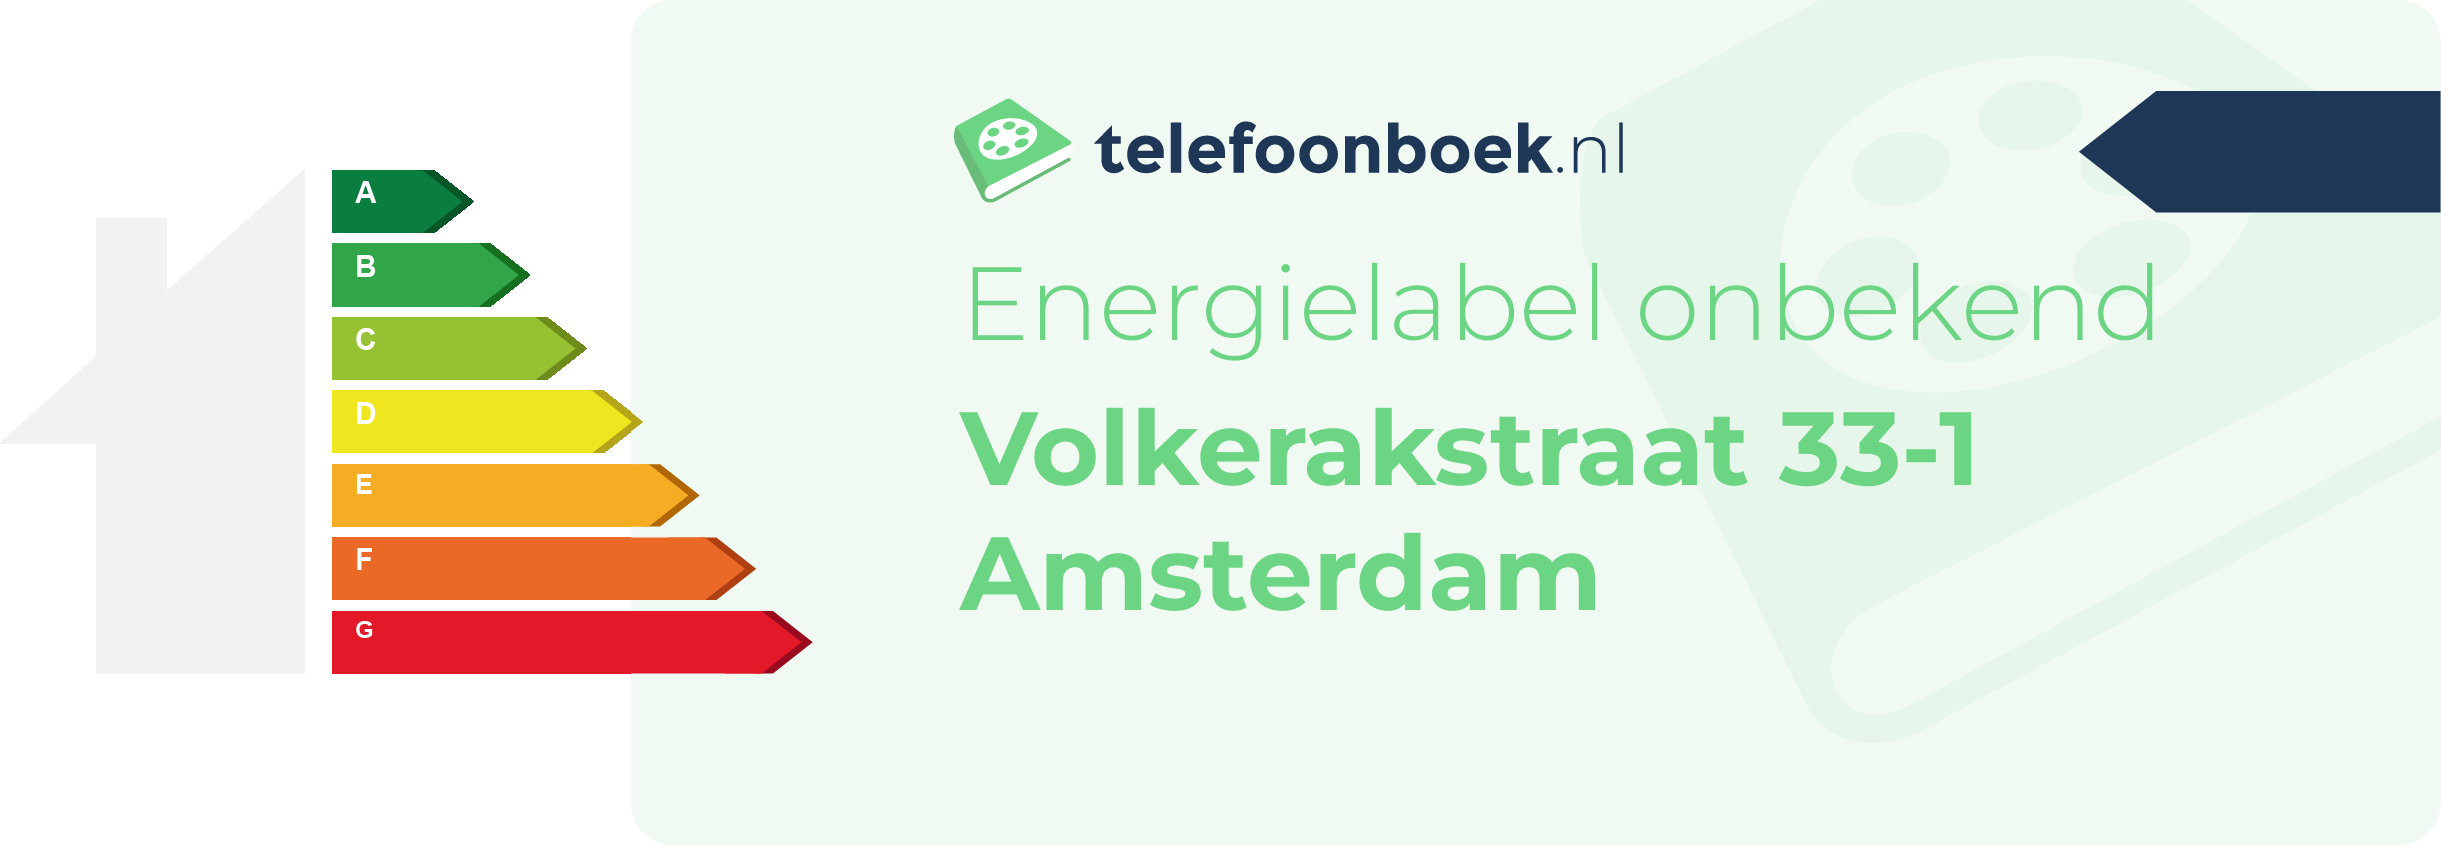 Energielabel Volkerakstraat 33-1 Amsterdam